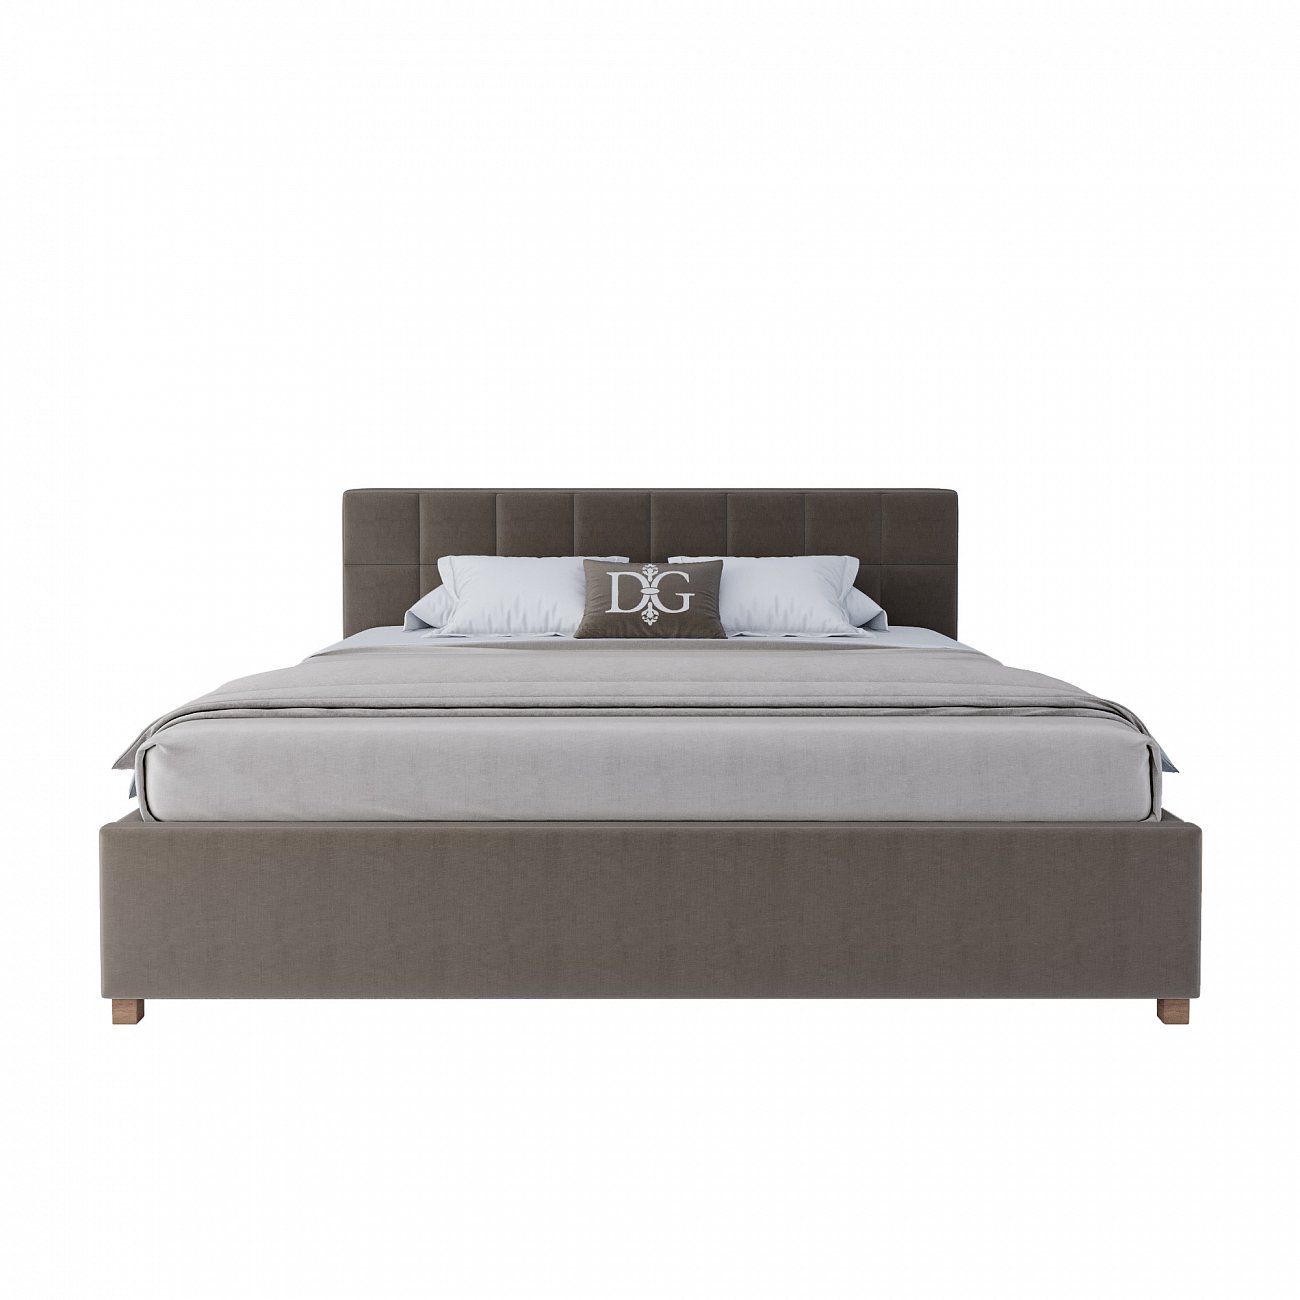 Кровать двуспальная 180х200 см серо-коричневая Wales